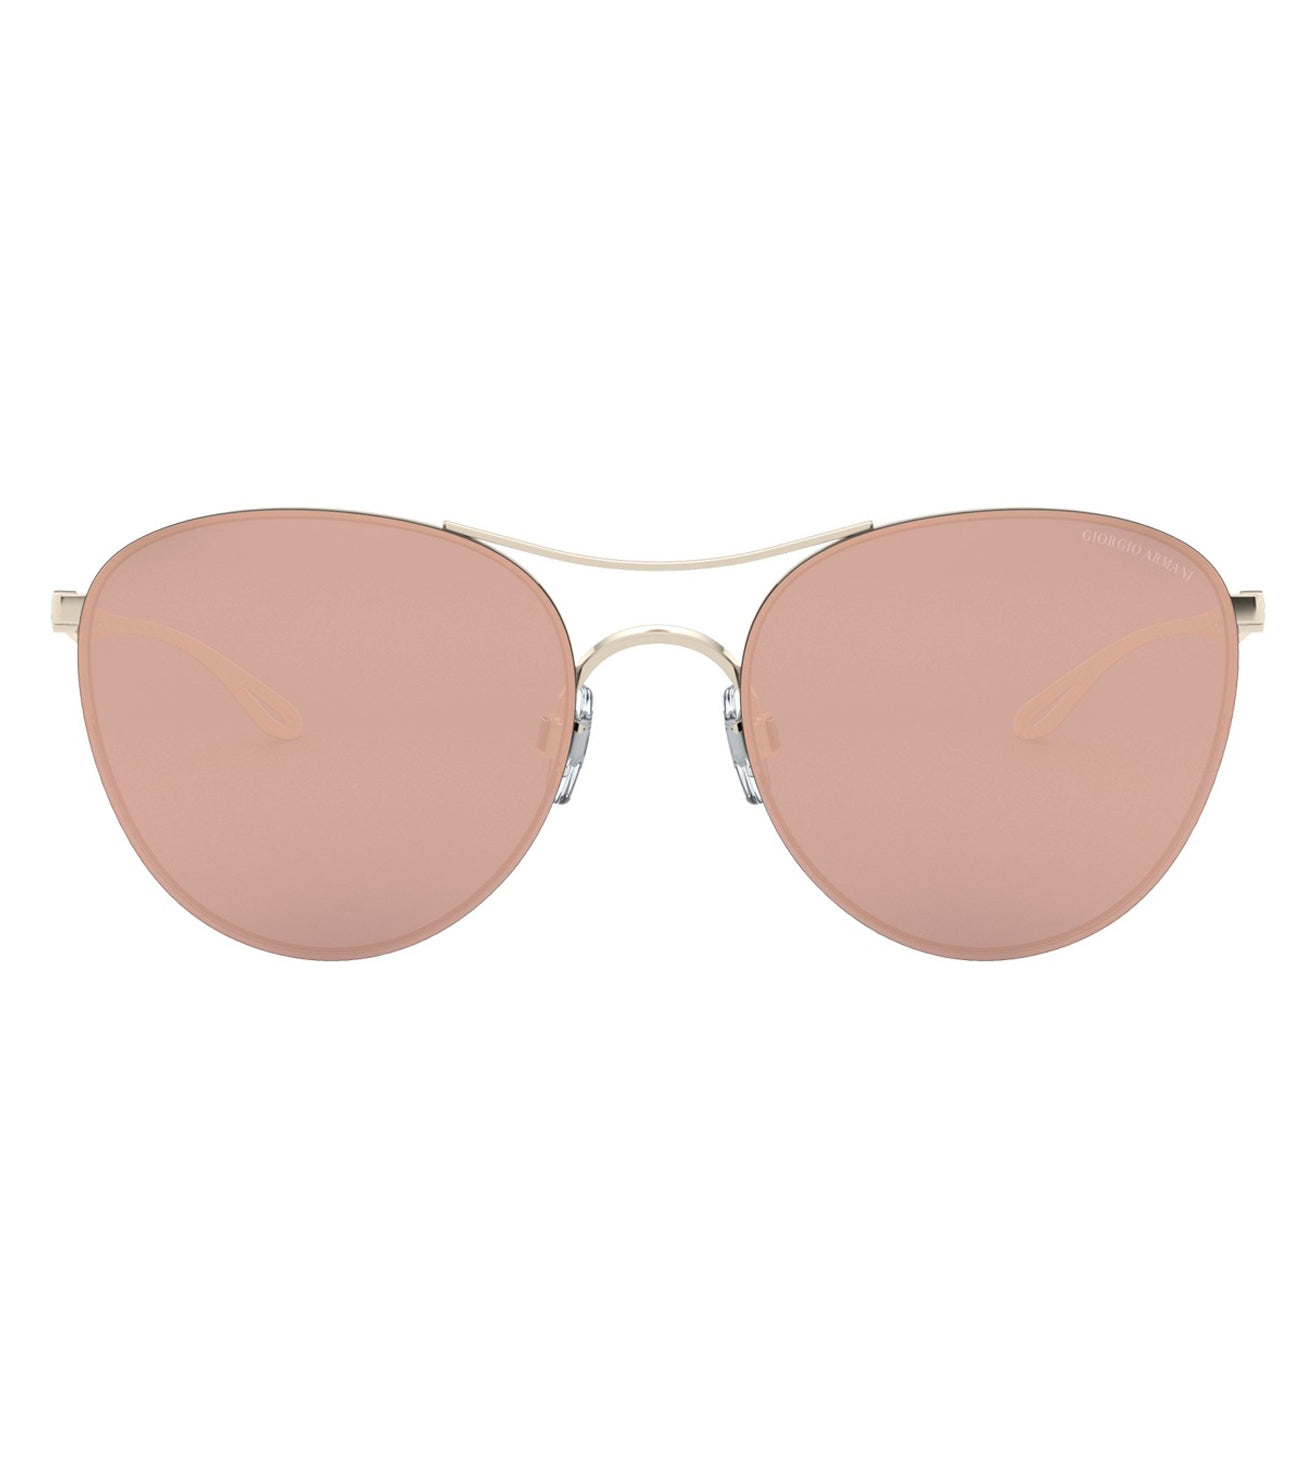 Giorgio Armani Women's Grey-mirrored/Rose Gold Round Sunglasses